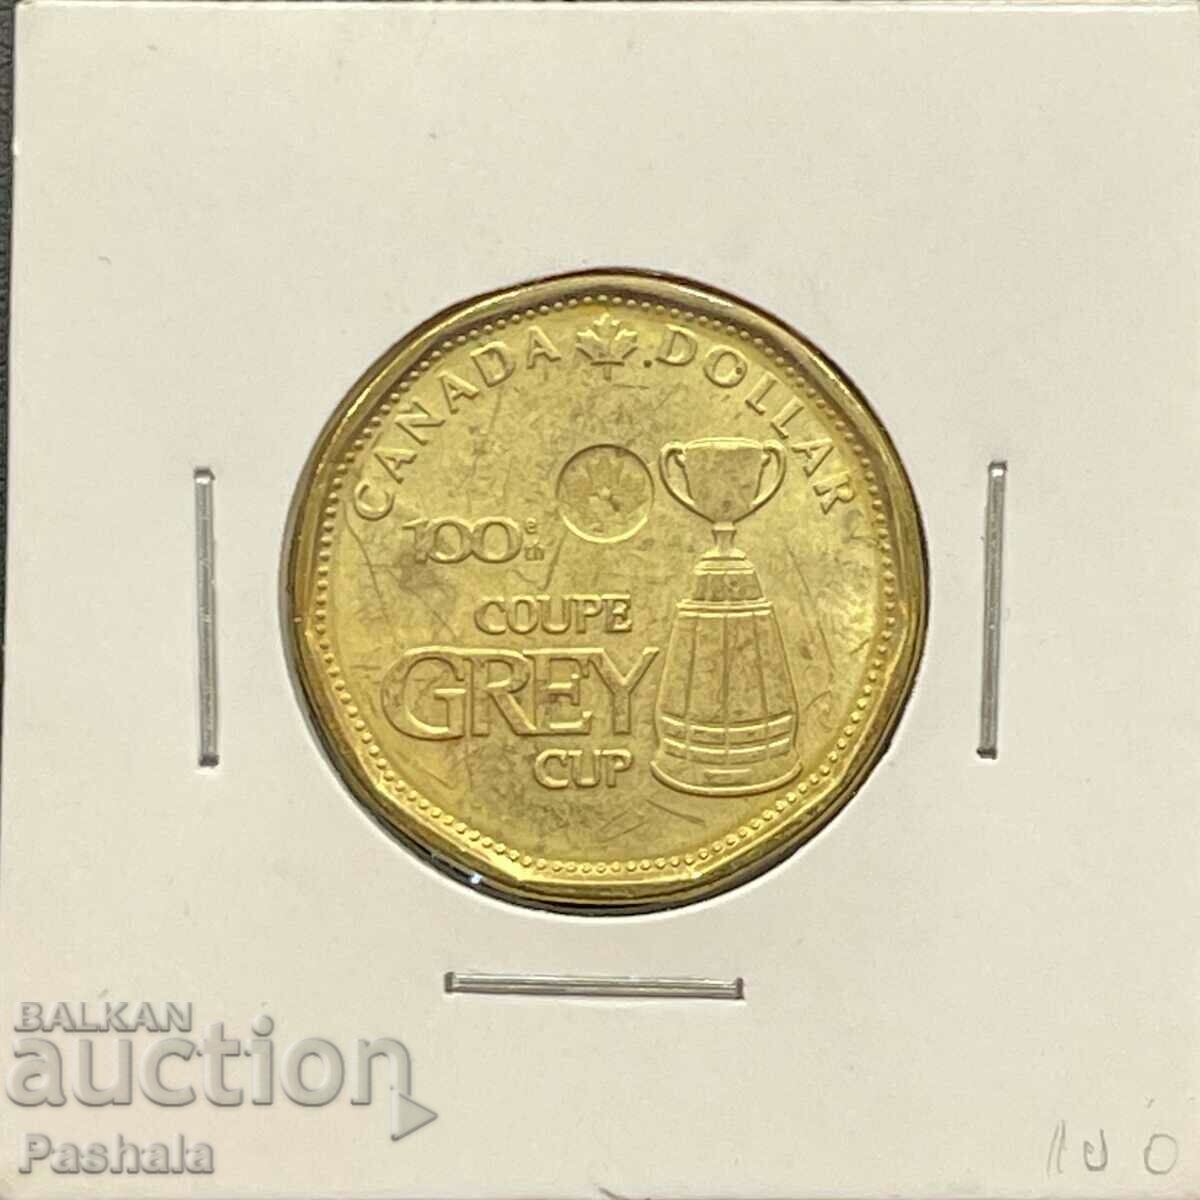 Canada $ 1 2012